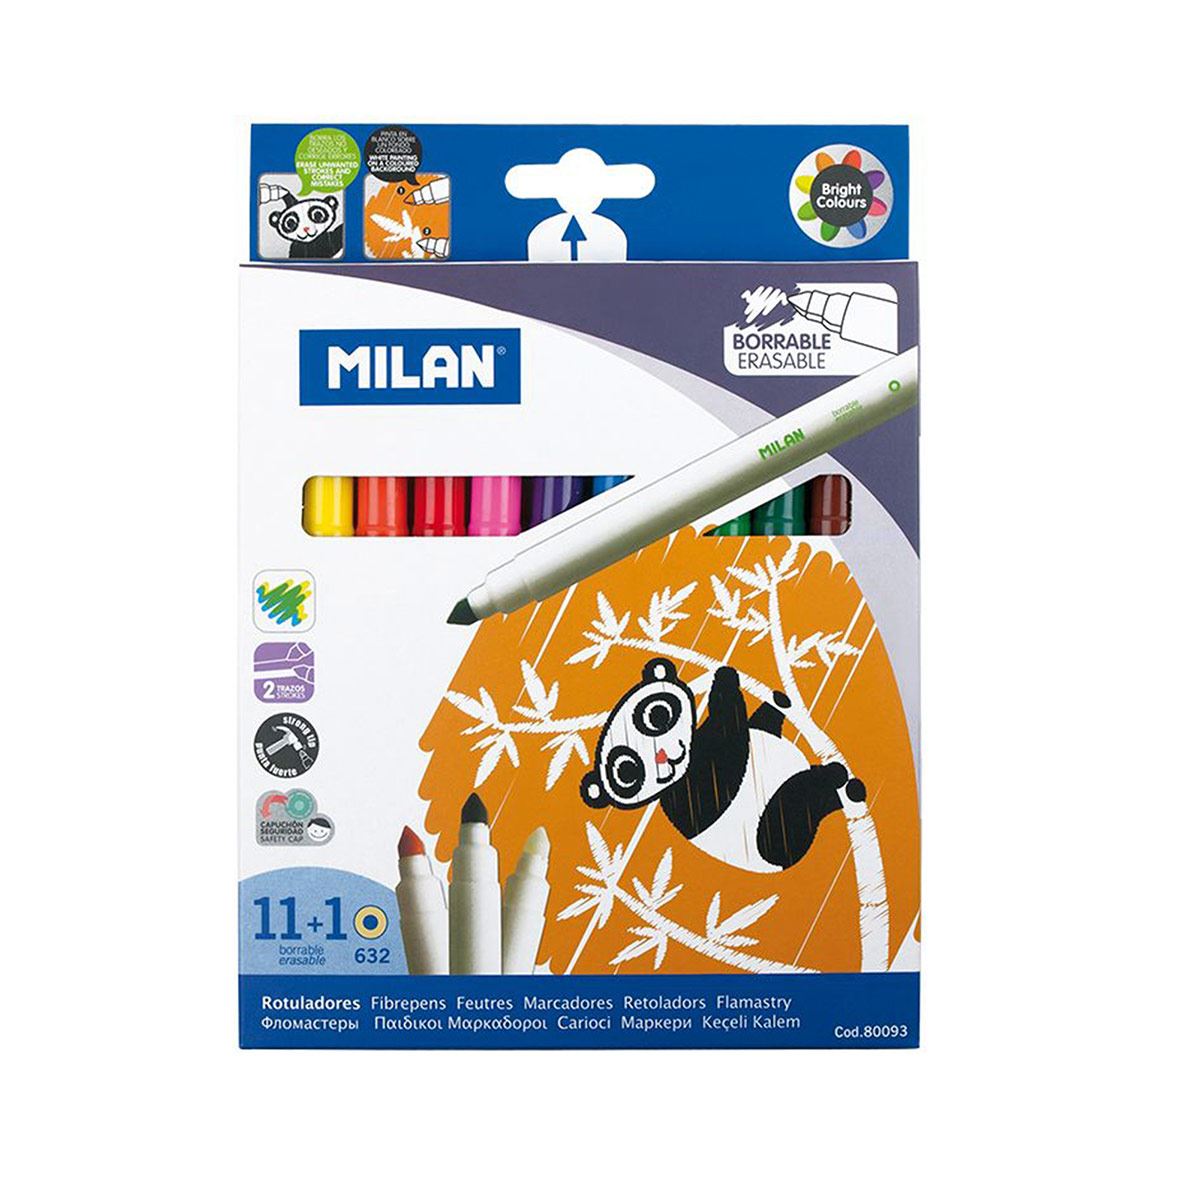 Caja 10 rotuladores Bicolor • MILAN